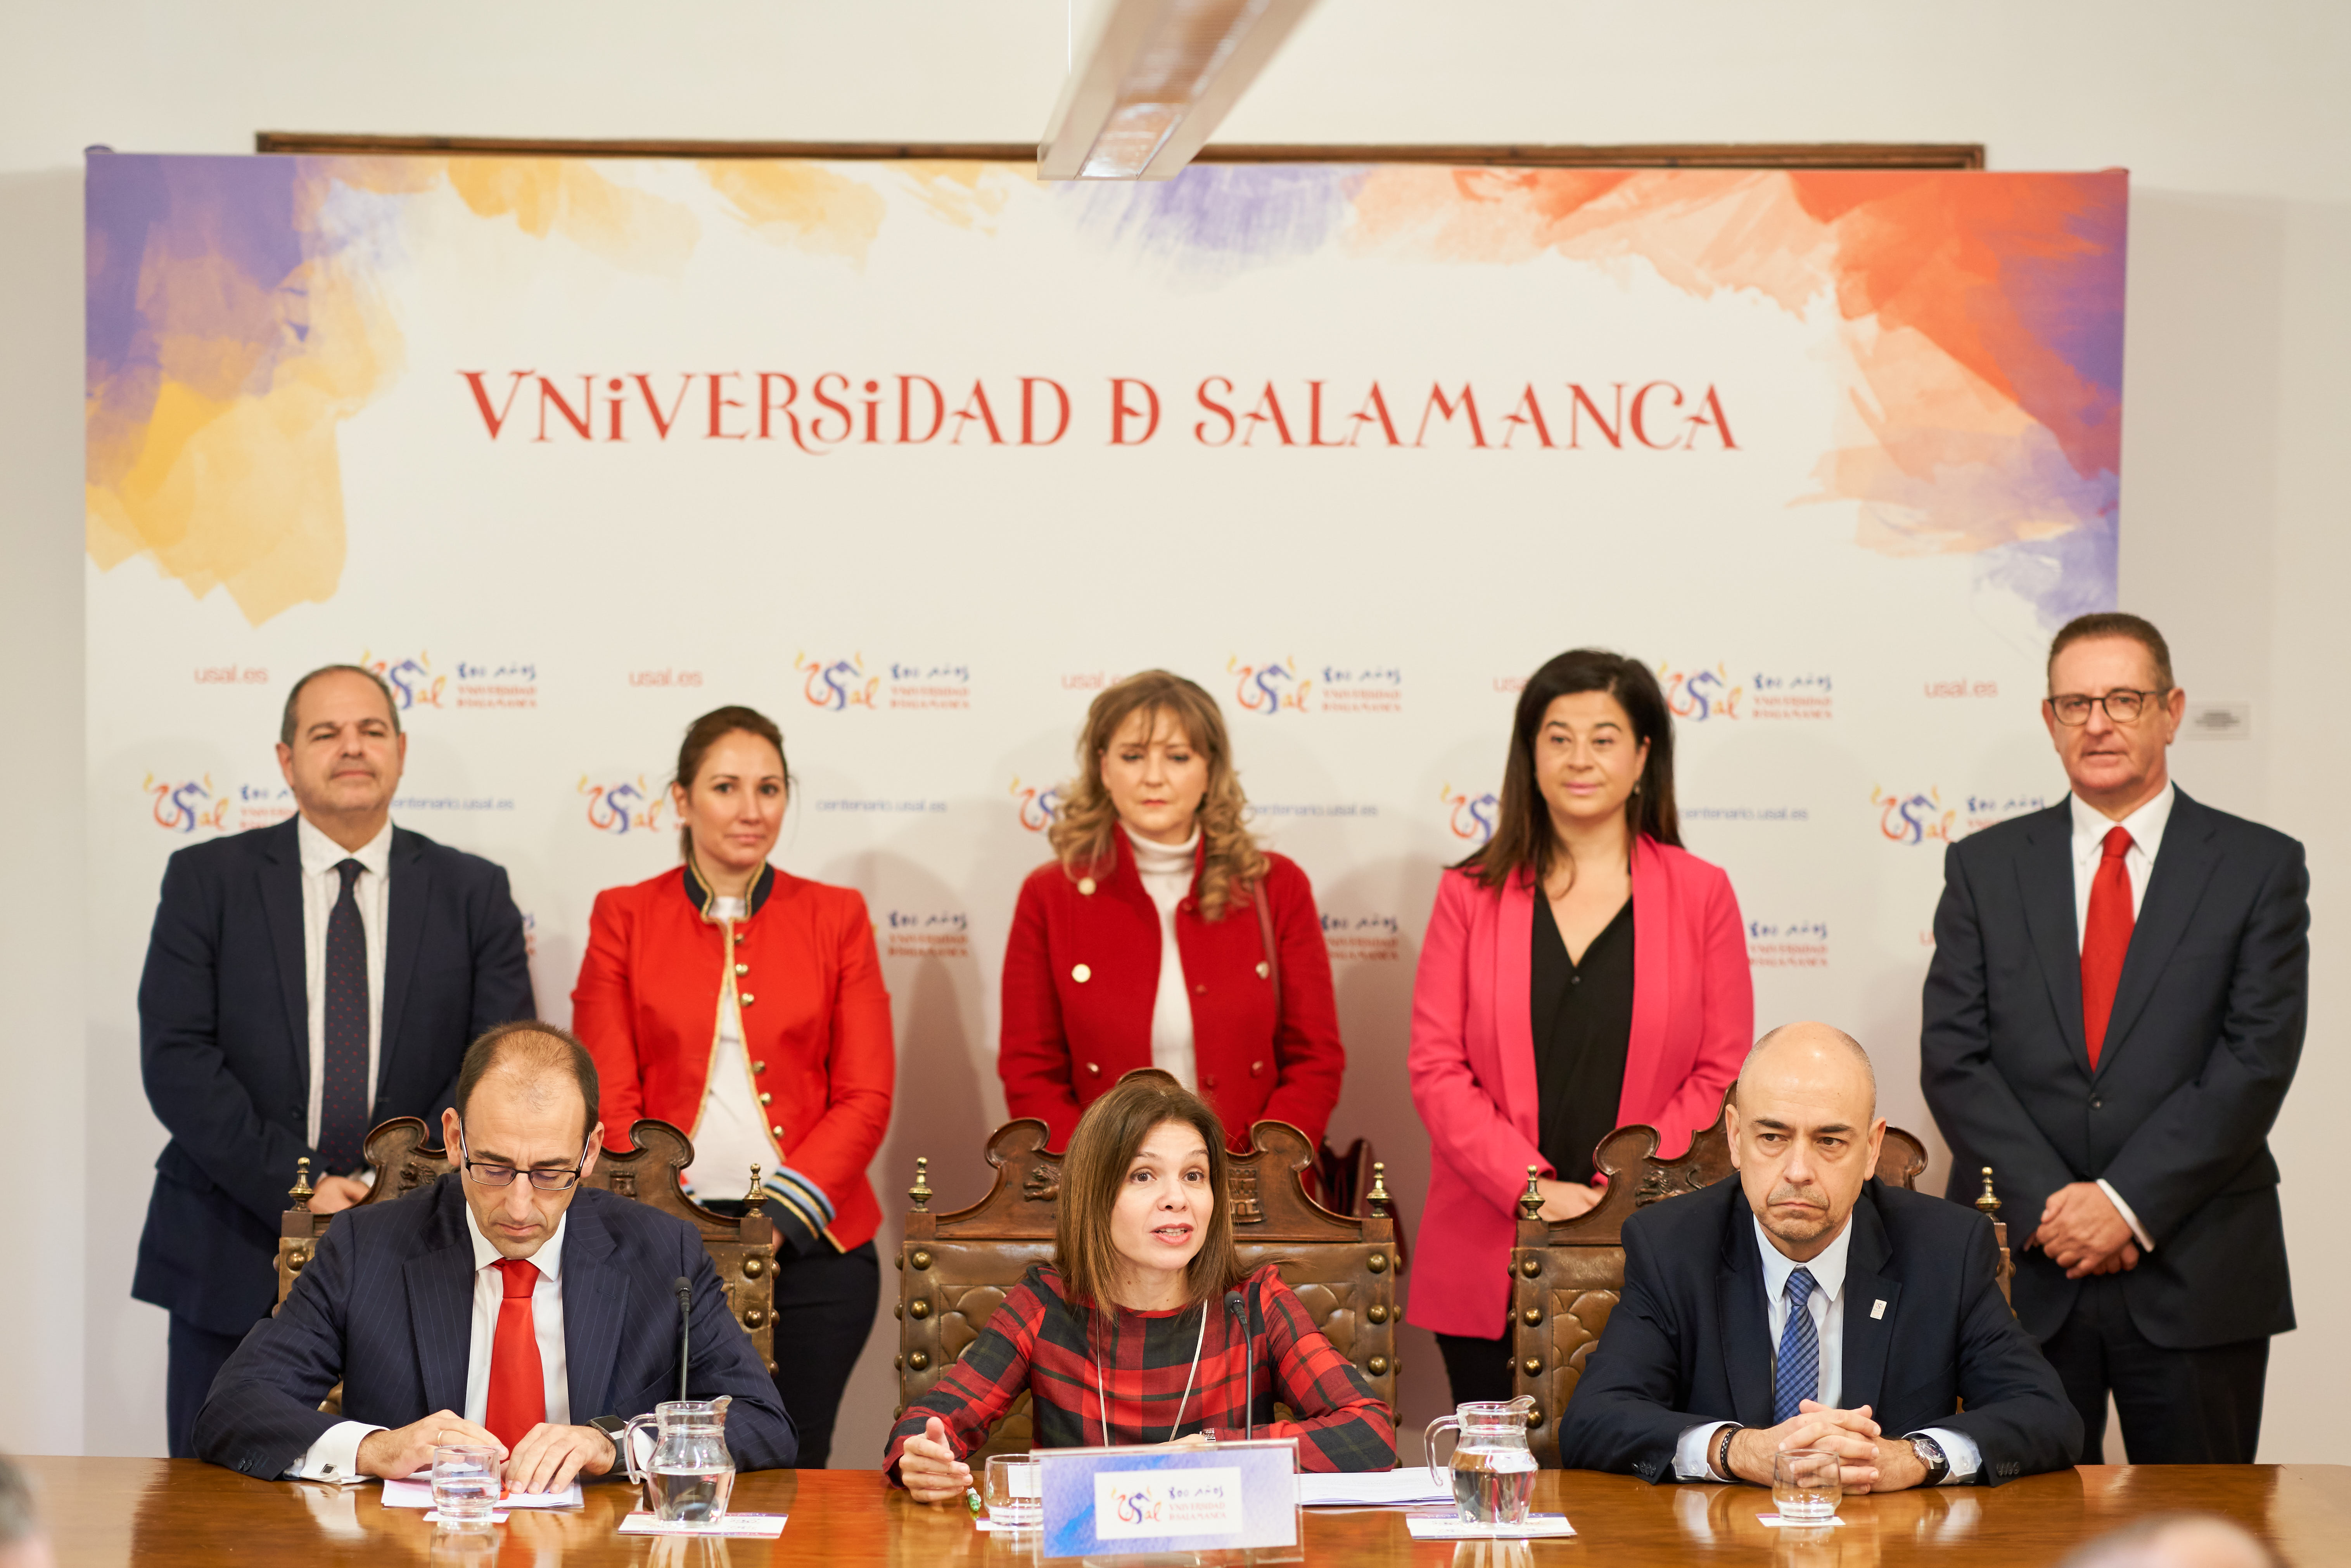 La Universidad de Salamanca y Santander presentan las III Jornadas de educación financiera para colegios